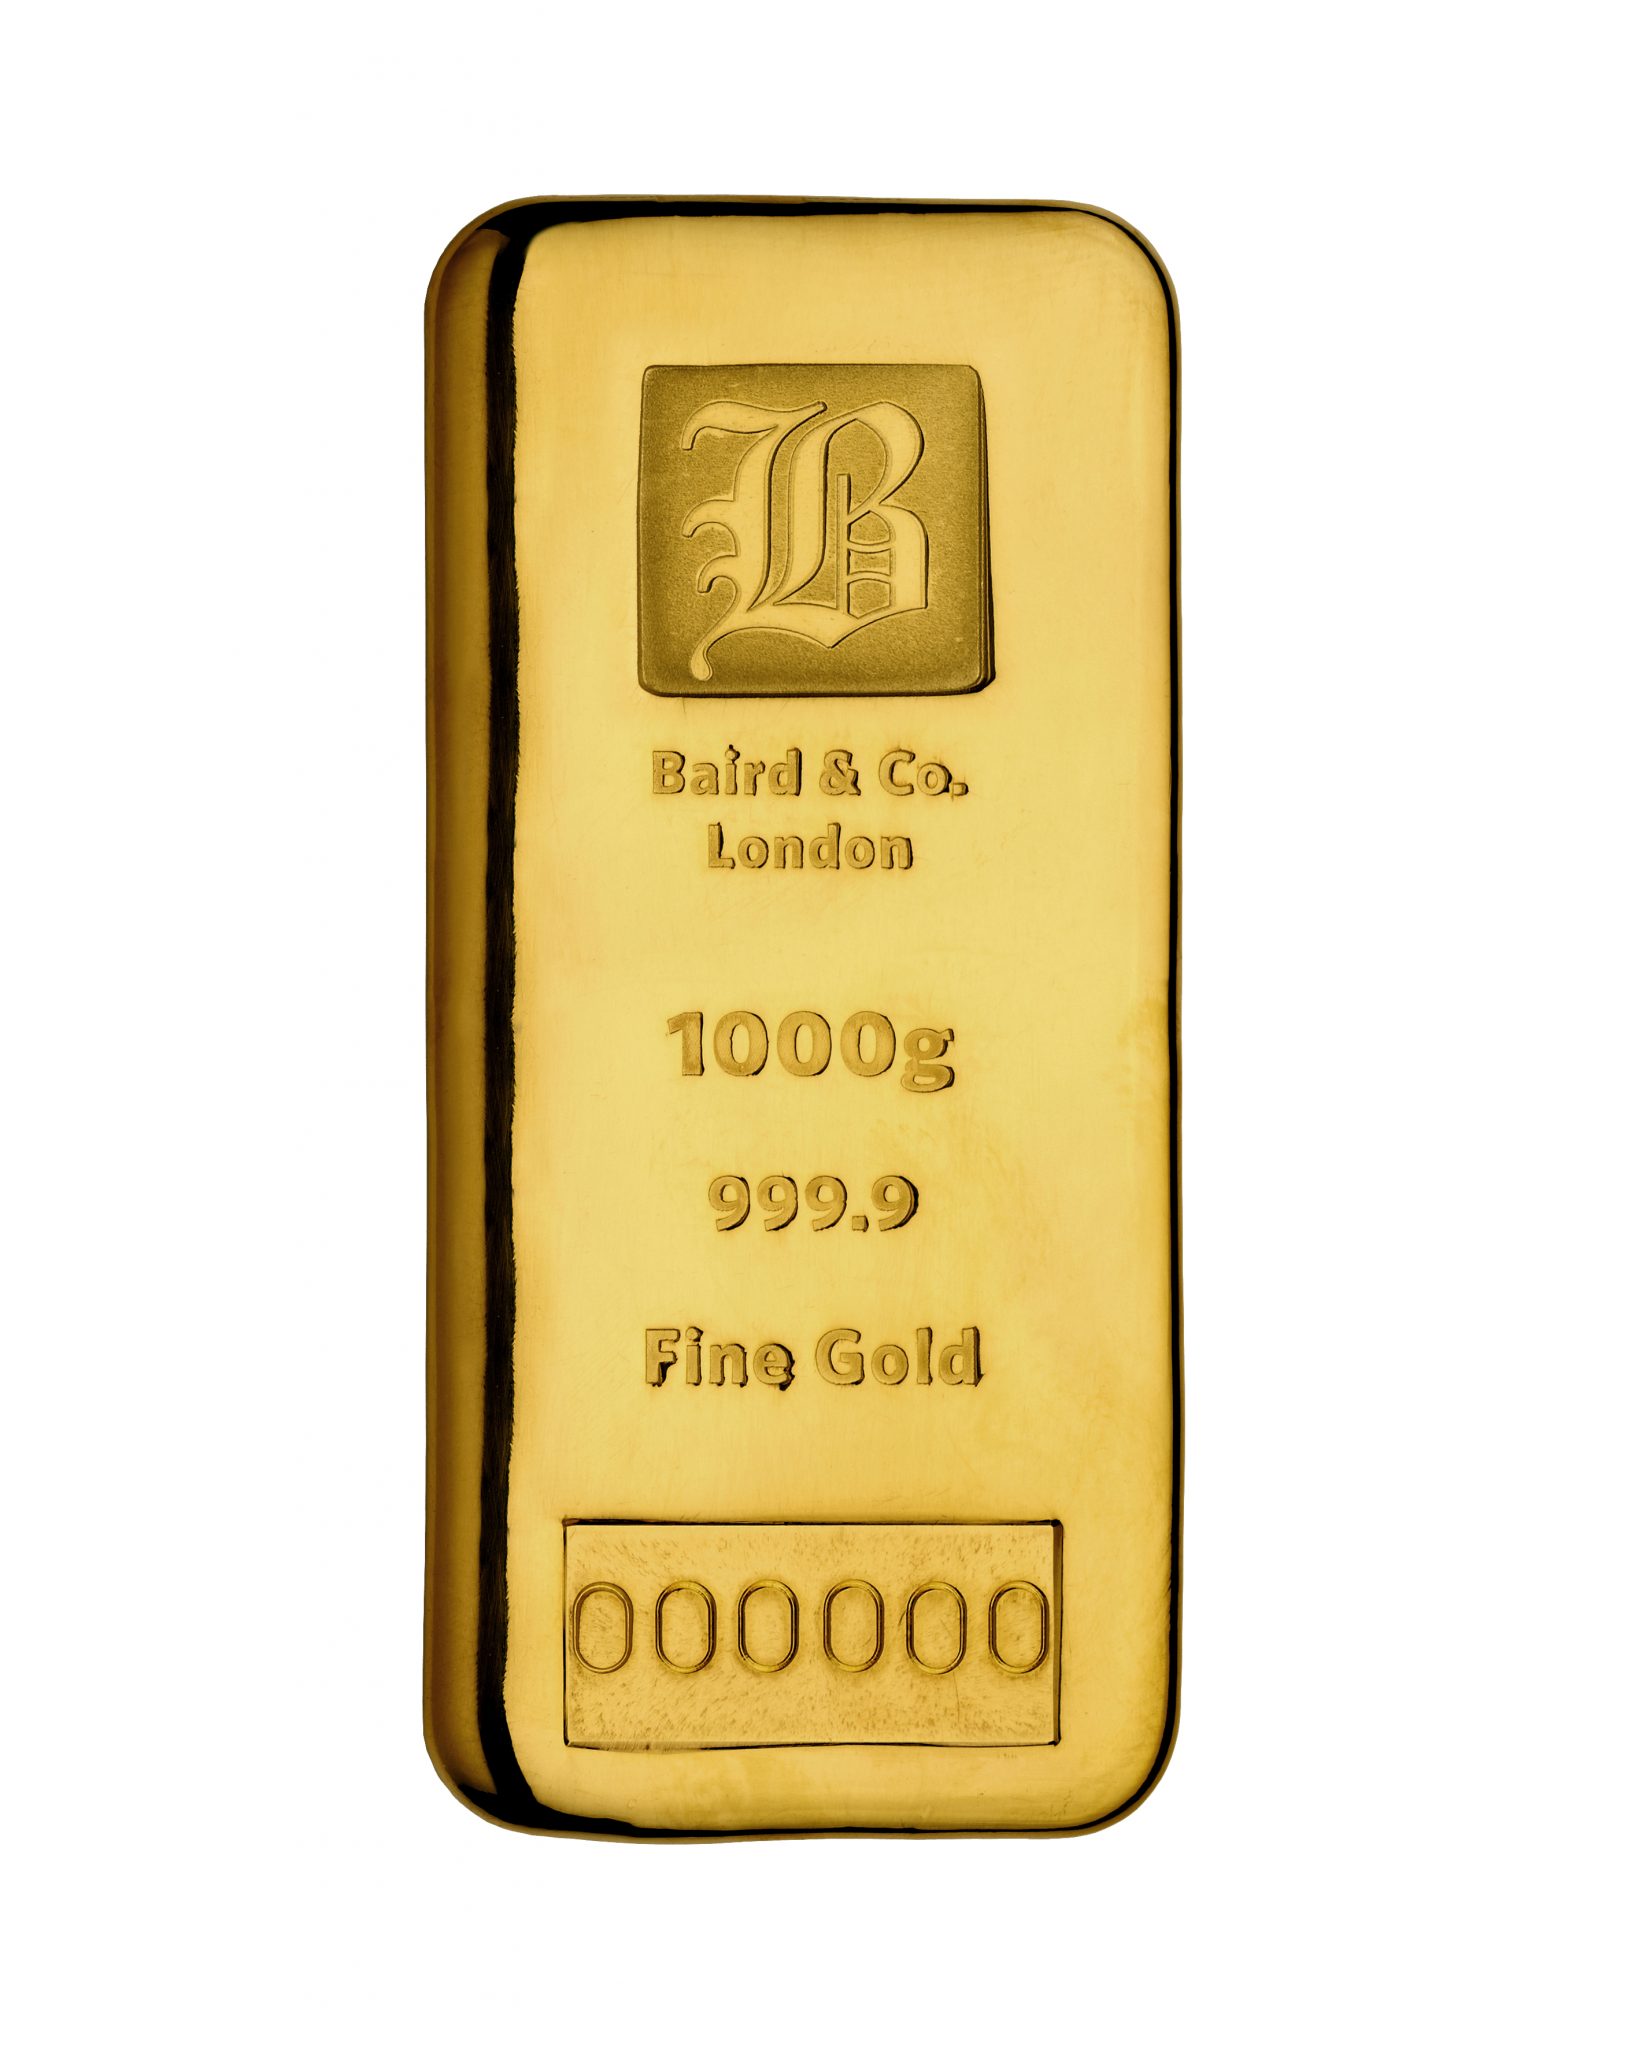 1 kilo Gold Cast Bar - Baird & Co. - AU Bullion Canada